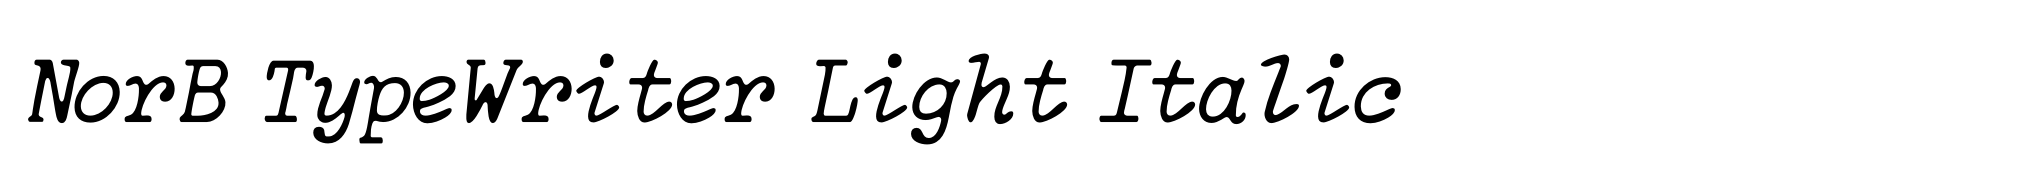 NorB TypeWriter Light Italic image